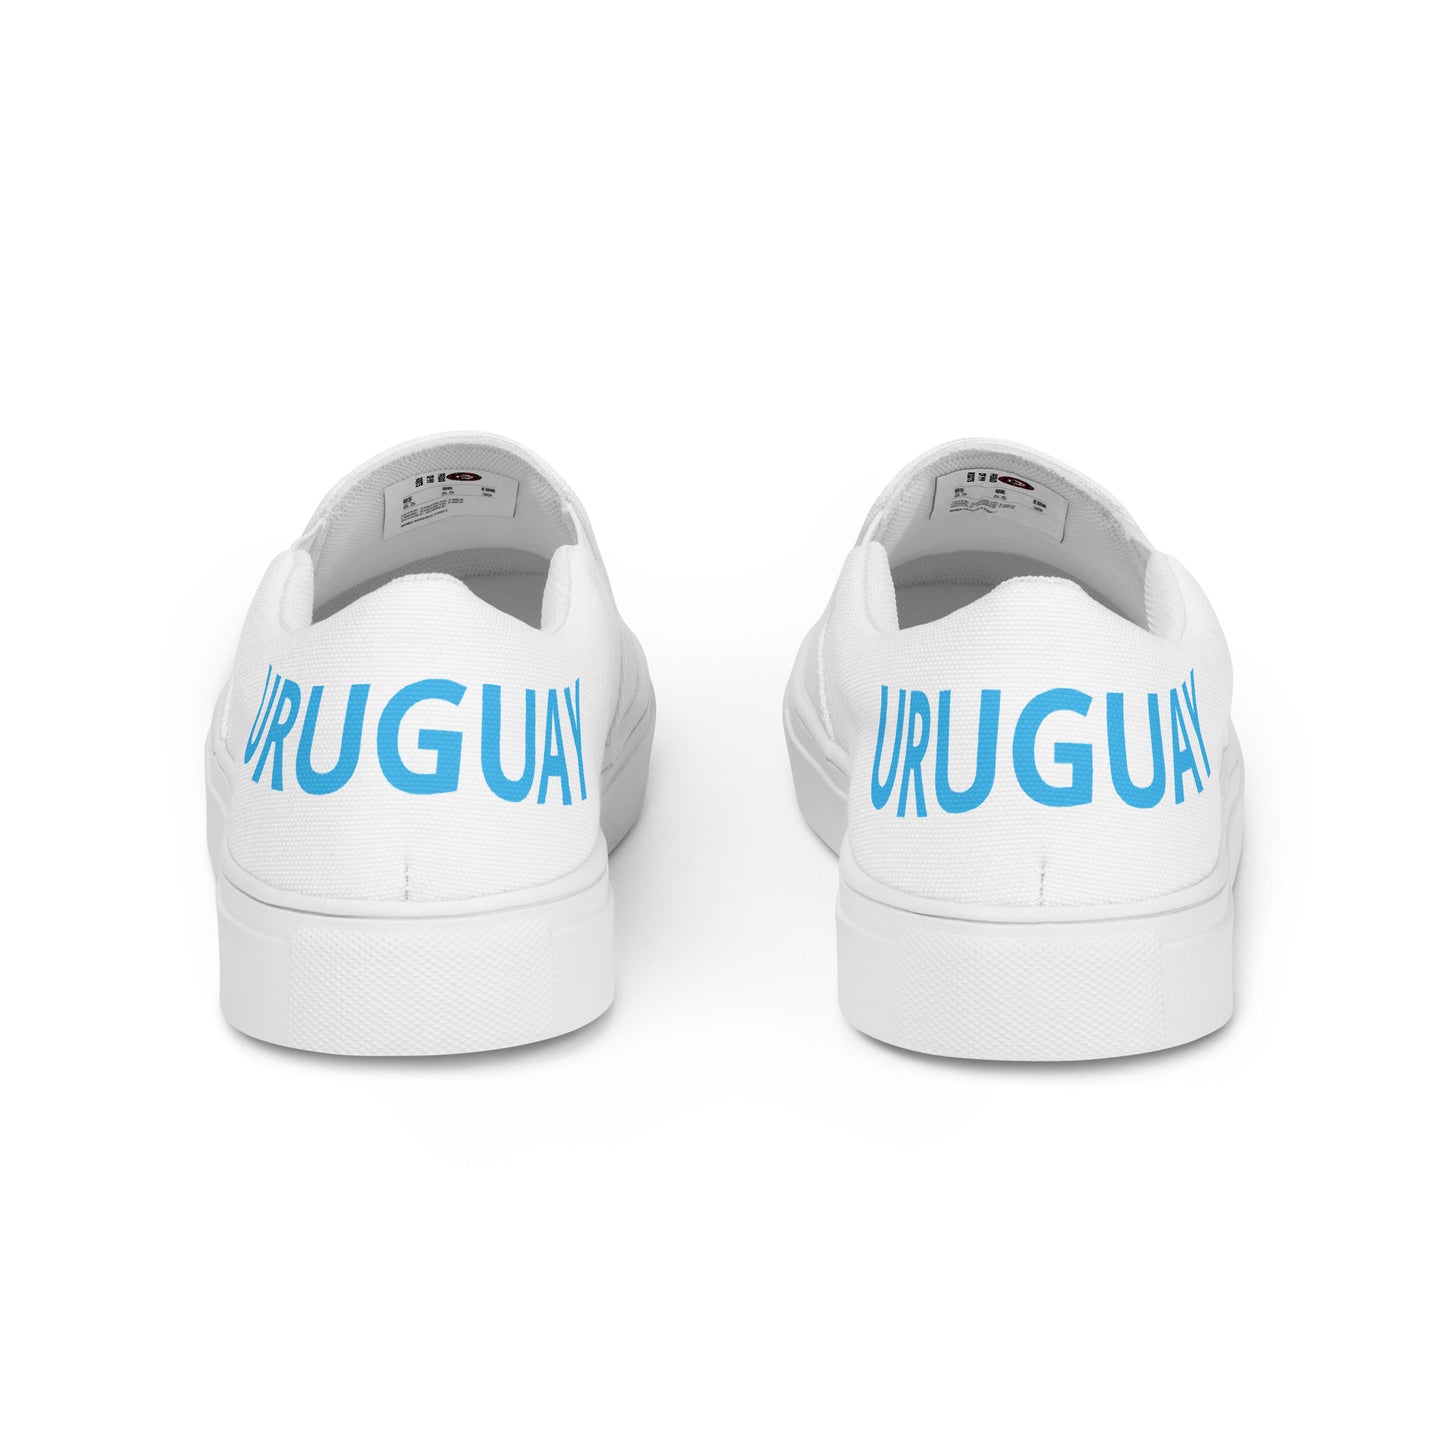 Uruguay - Men - White - Slip-on shoes